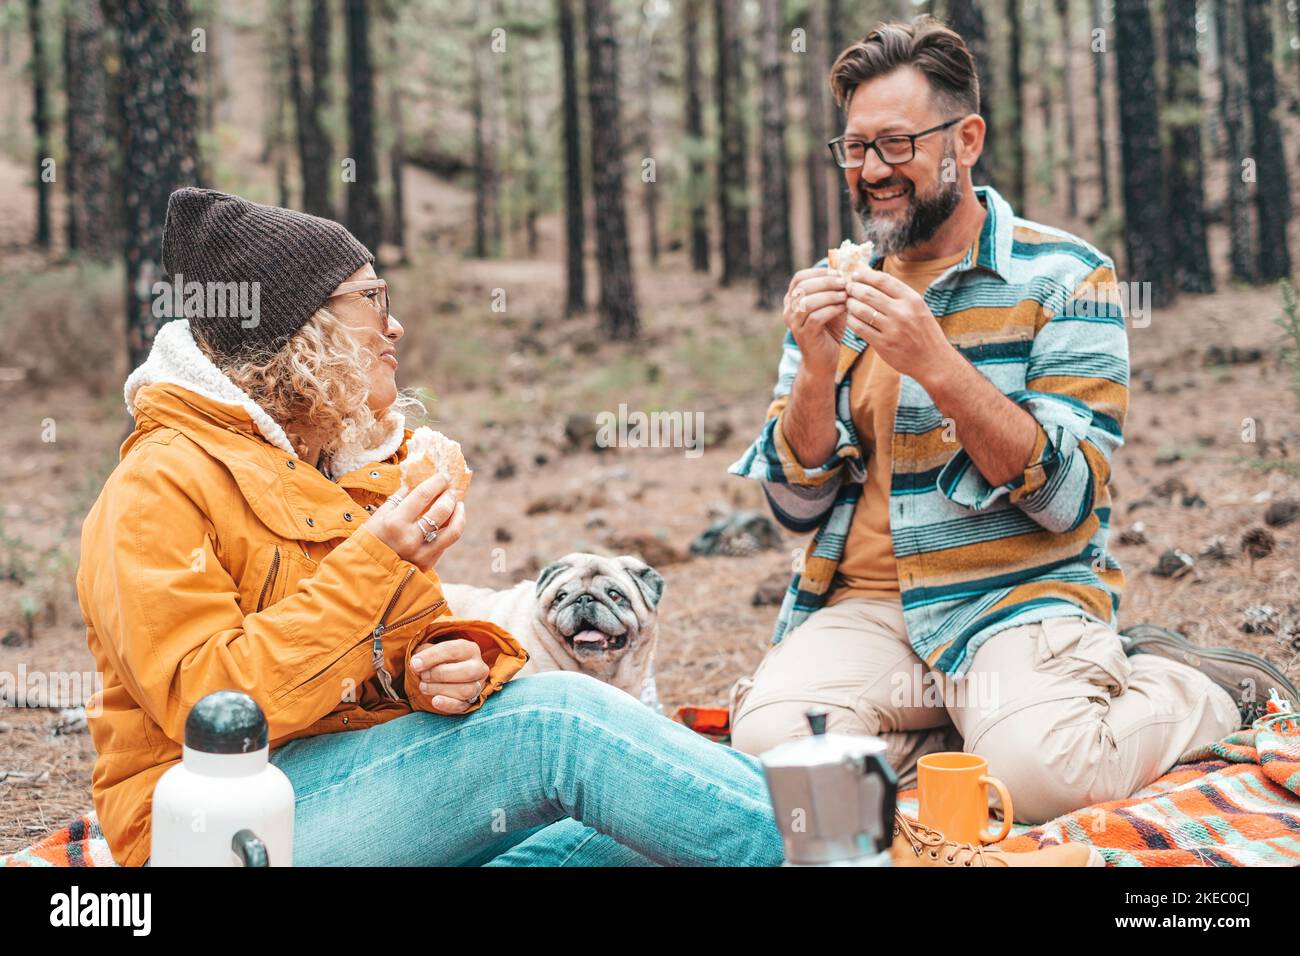 Zwei glückliche Menschen und ein Hund essen zusammen und machen ein Picknick auf dem Boden in den Bergen mit vielen Bäumen um sie herum Stockfoto